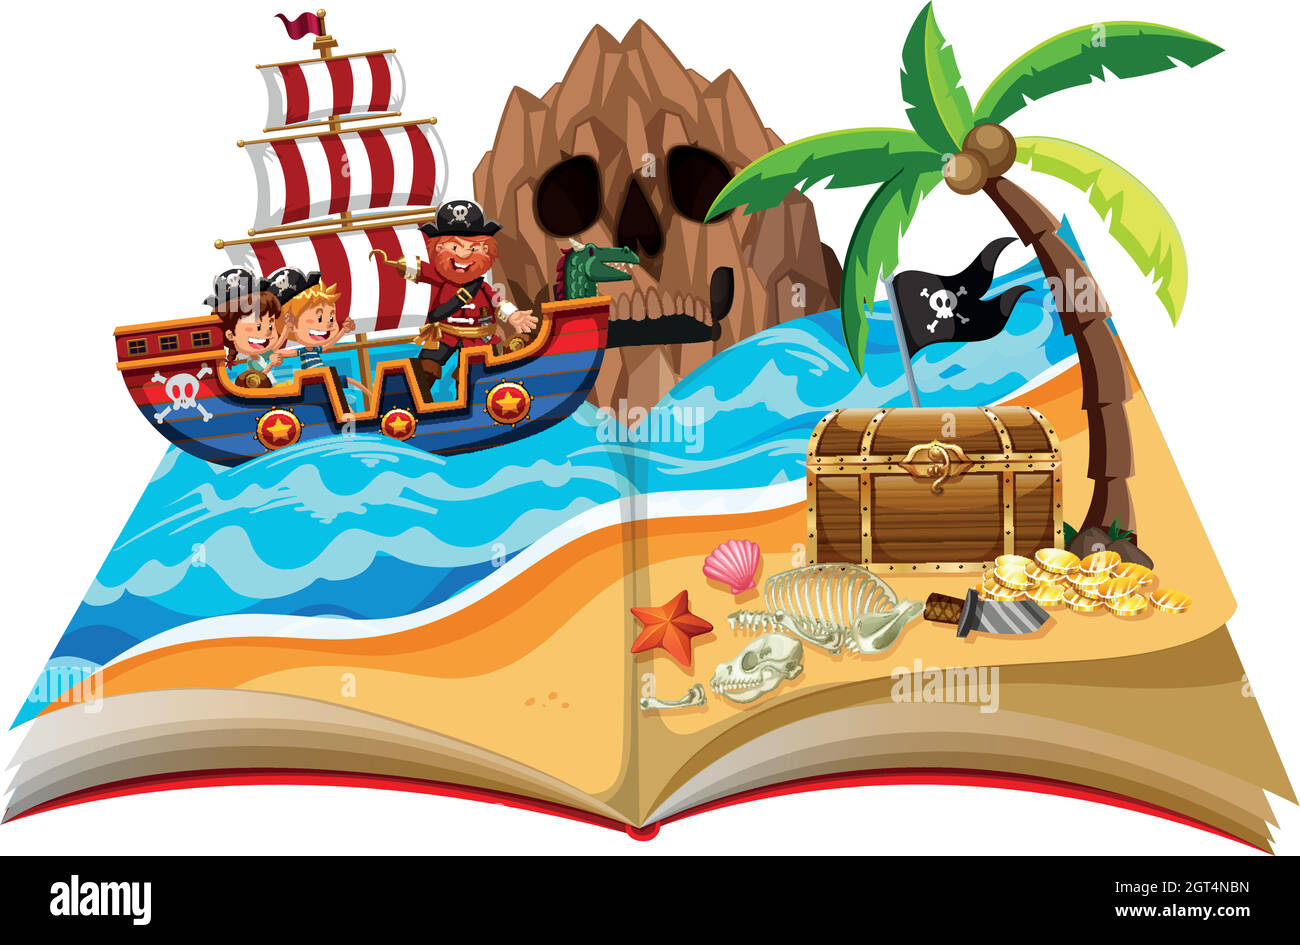 Un livre pop up thème pirate Illustration de Vecteur